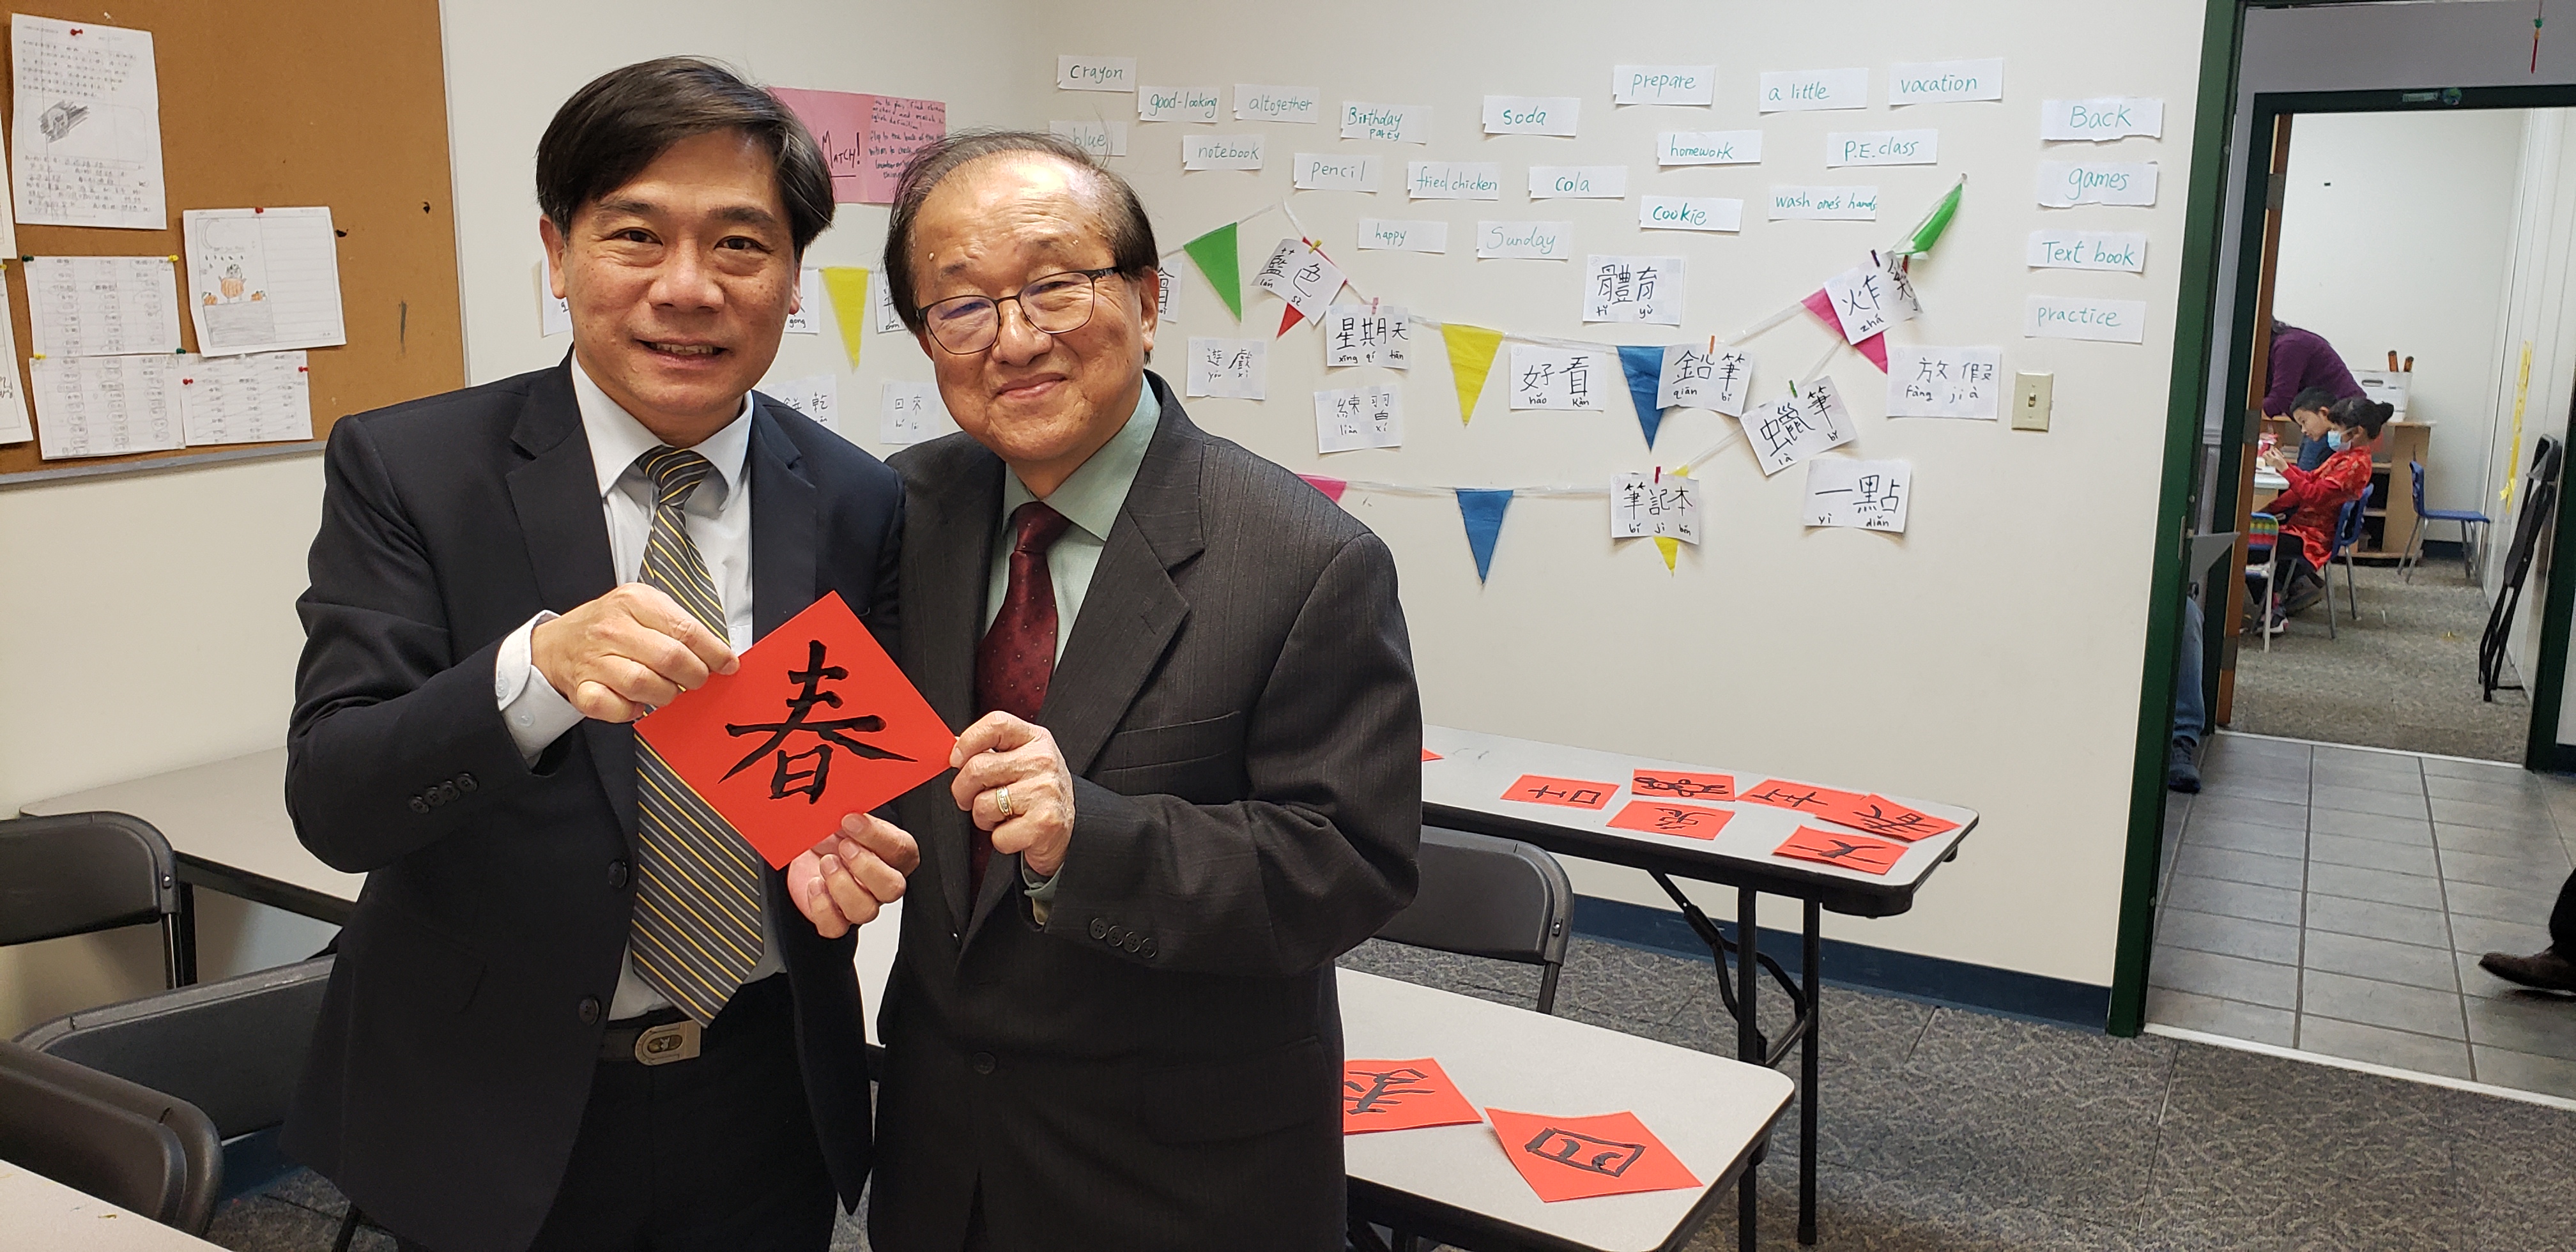 亞特蘭大僑教中心主任歐宏偉(左)與臺美學校校長鄒宏熙(右)一同寫春字